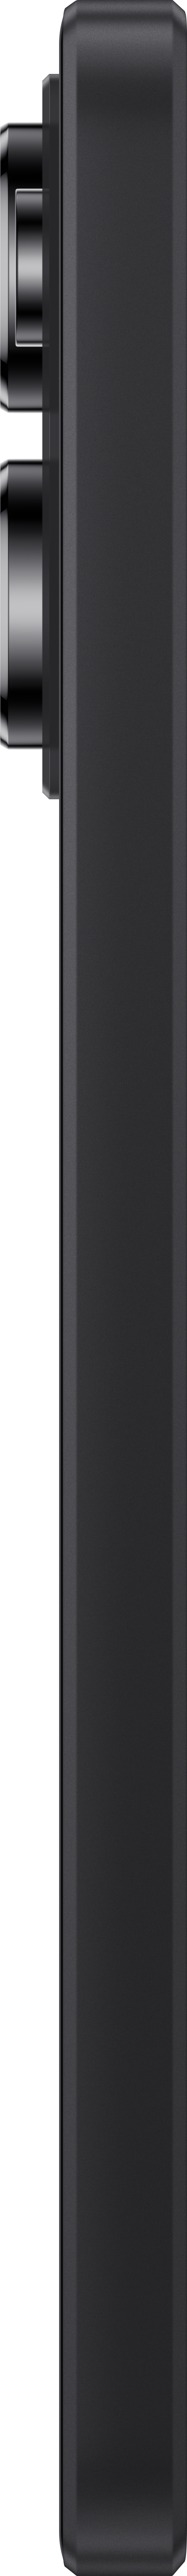 XIAOMI Redmi Note 5G SIM Pro Dual Midnight Black GB 256 13